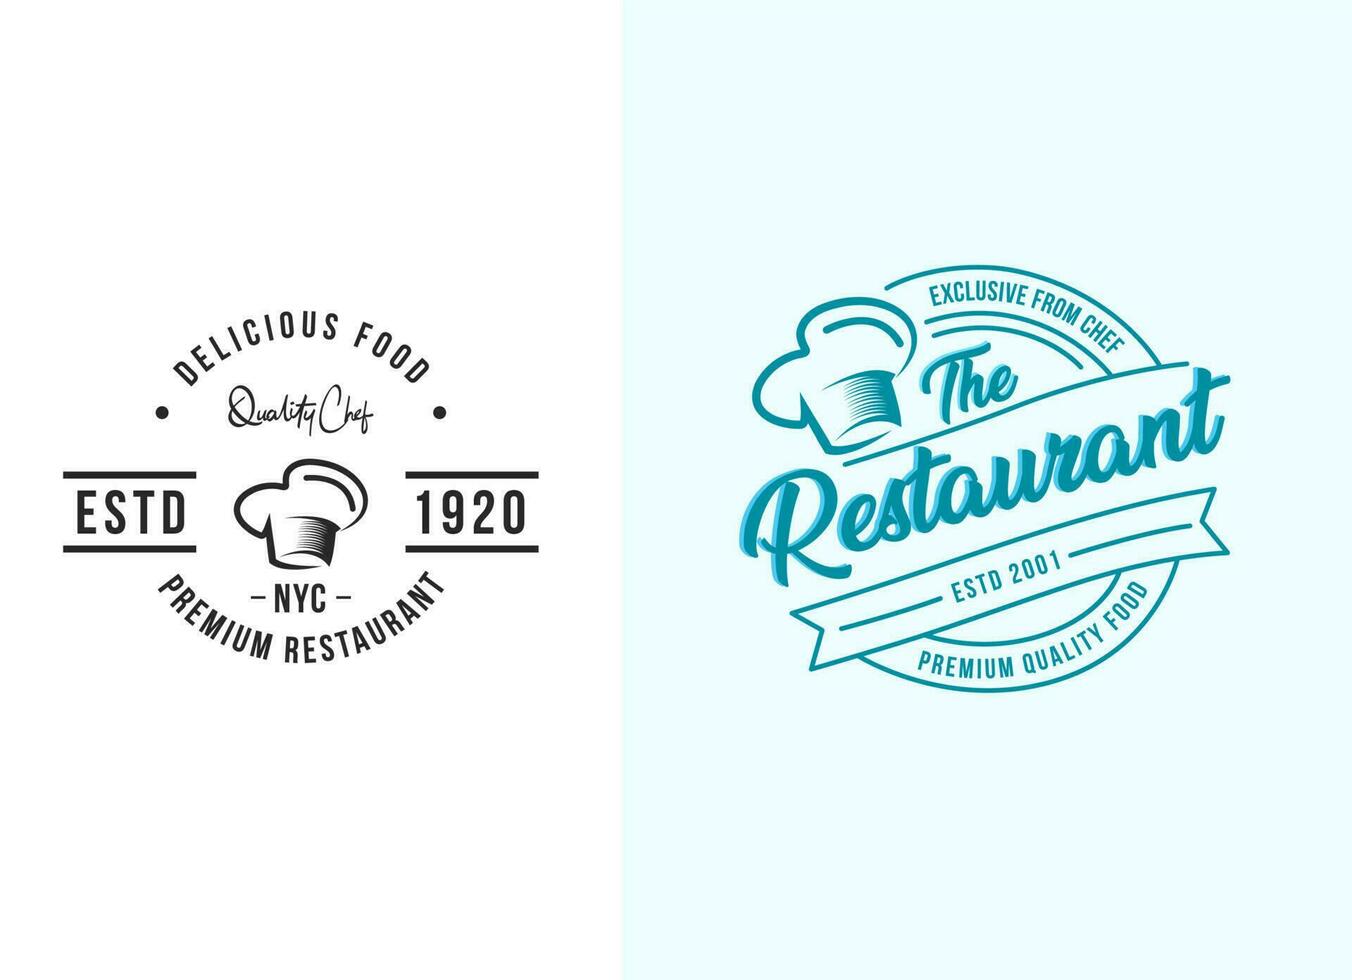 chef moderno e modello di progettazione del logo del ristorante di cucina vettore